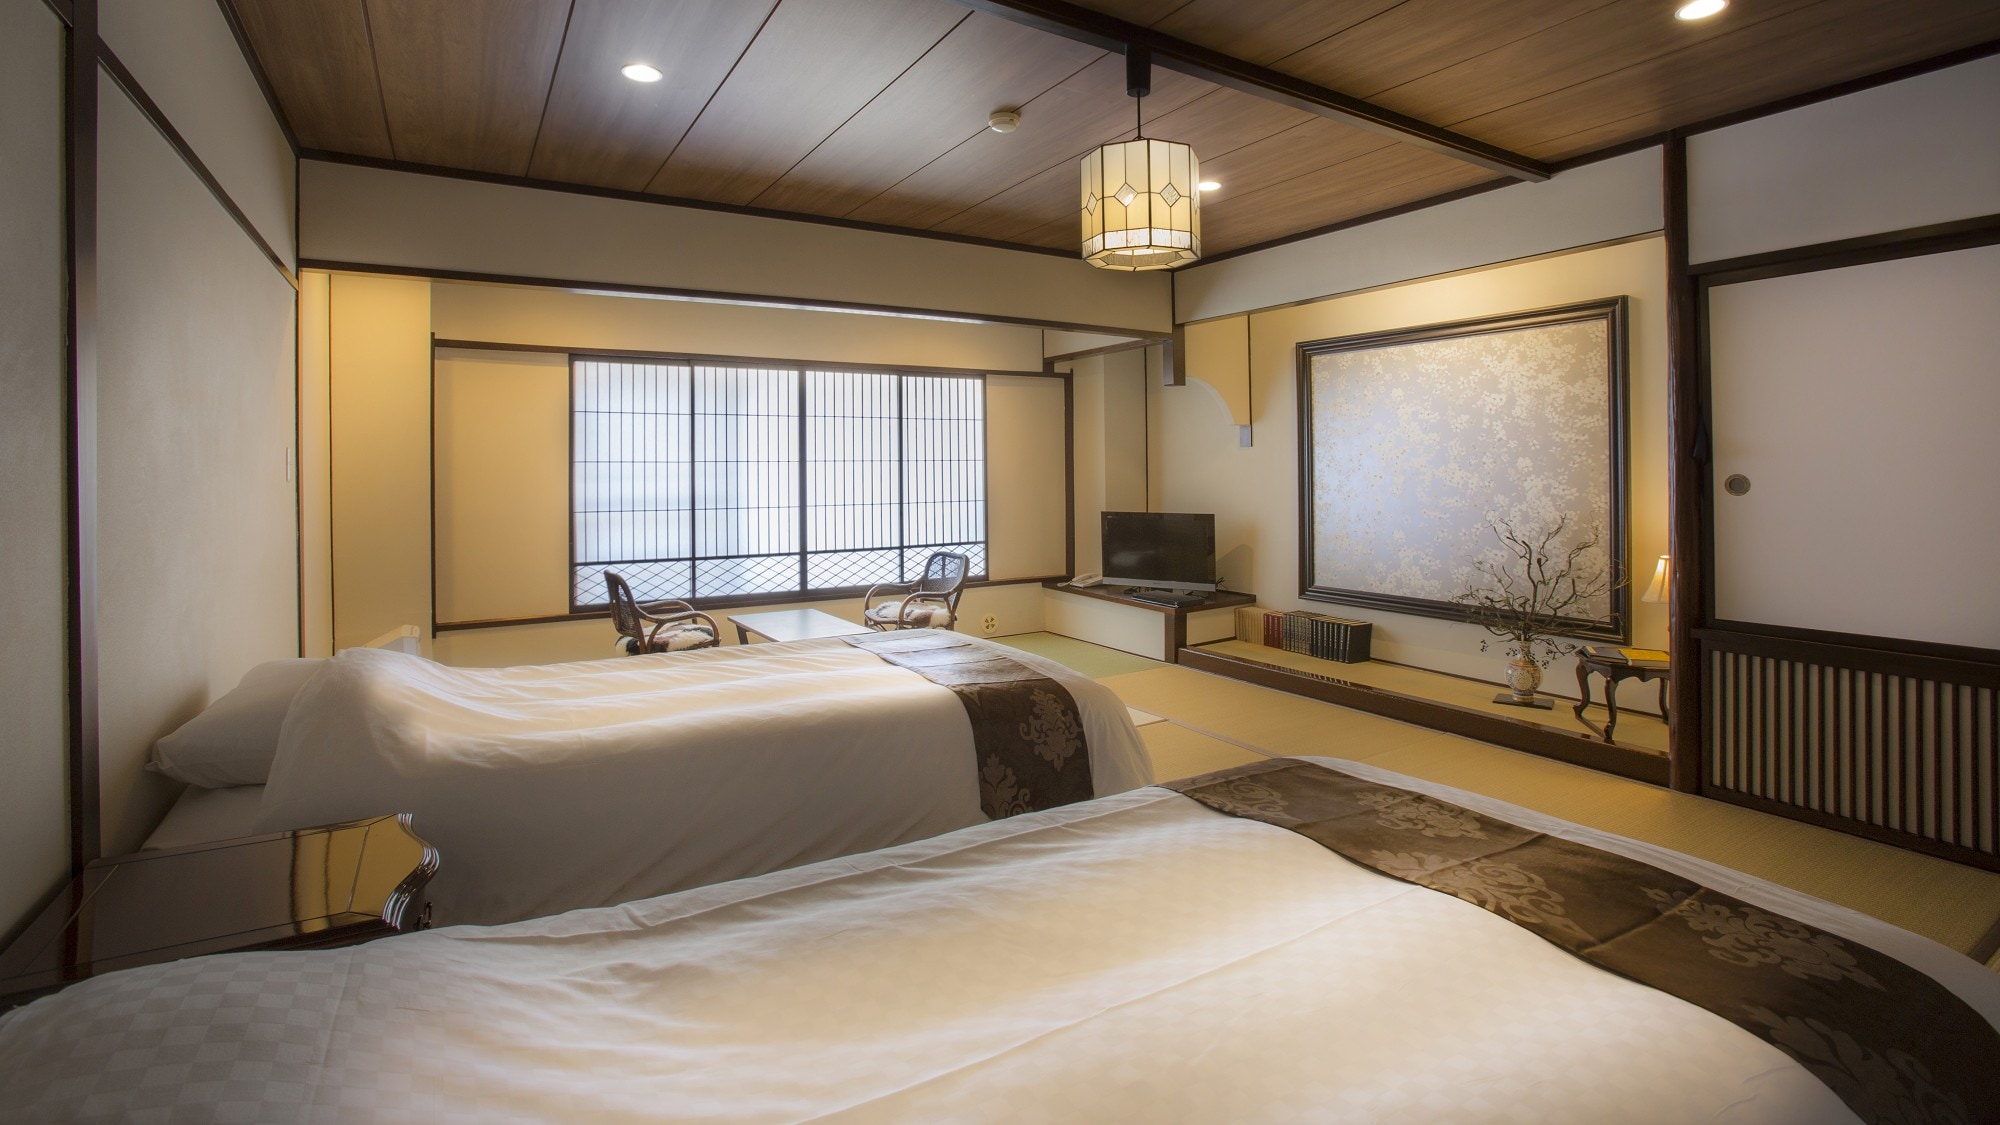 Standar Miyamatei Menanggapi permintaan "Saya ingin tidur di tempat tidur karena kaki saya sakit," saya meletakkan tempat tidur di kamar bergaya Jepang.